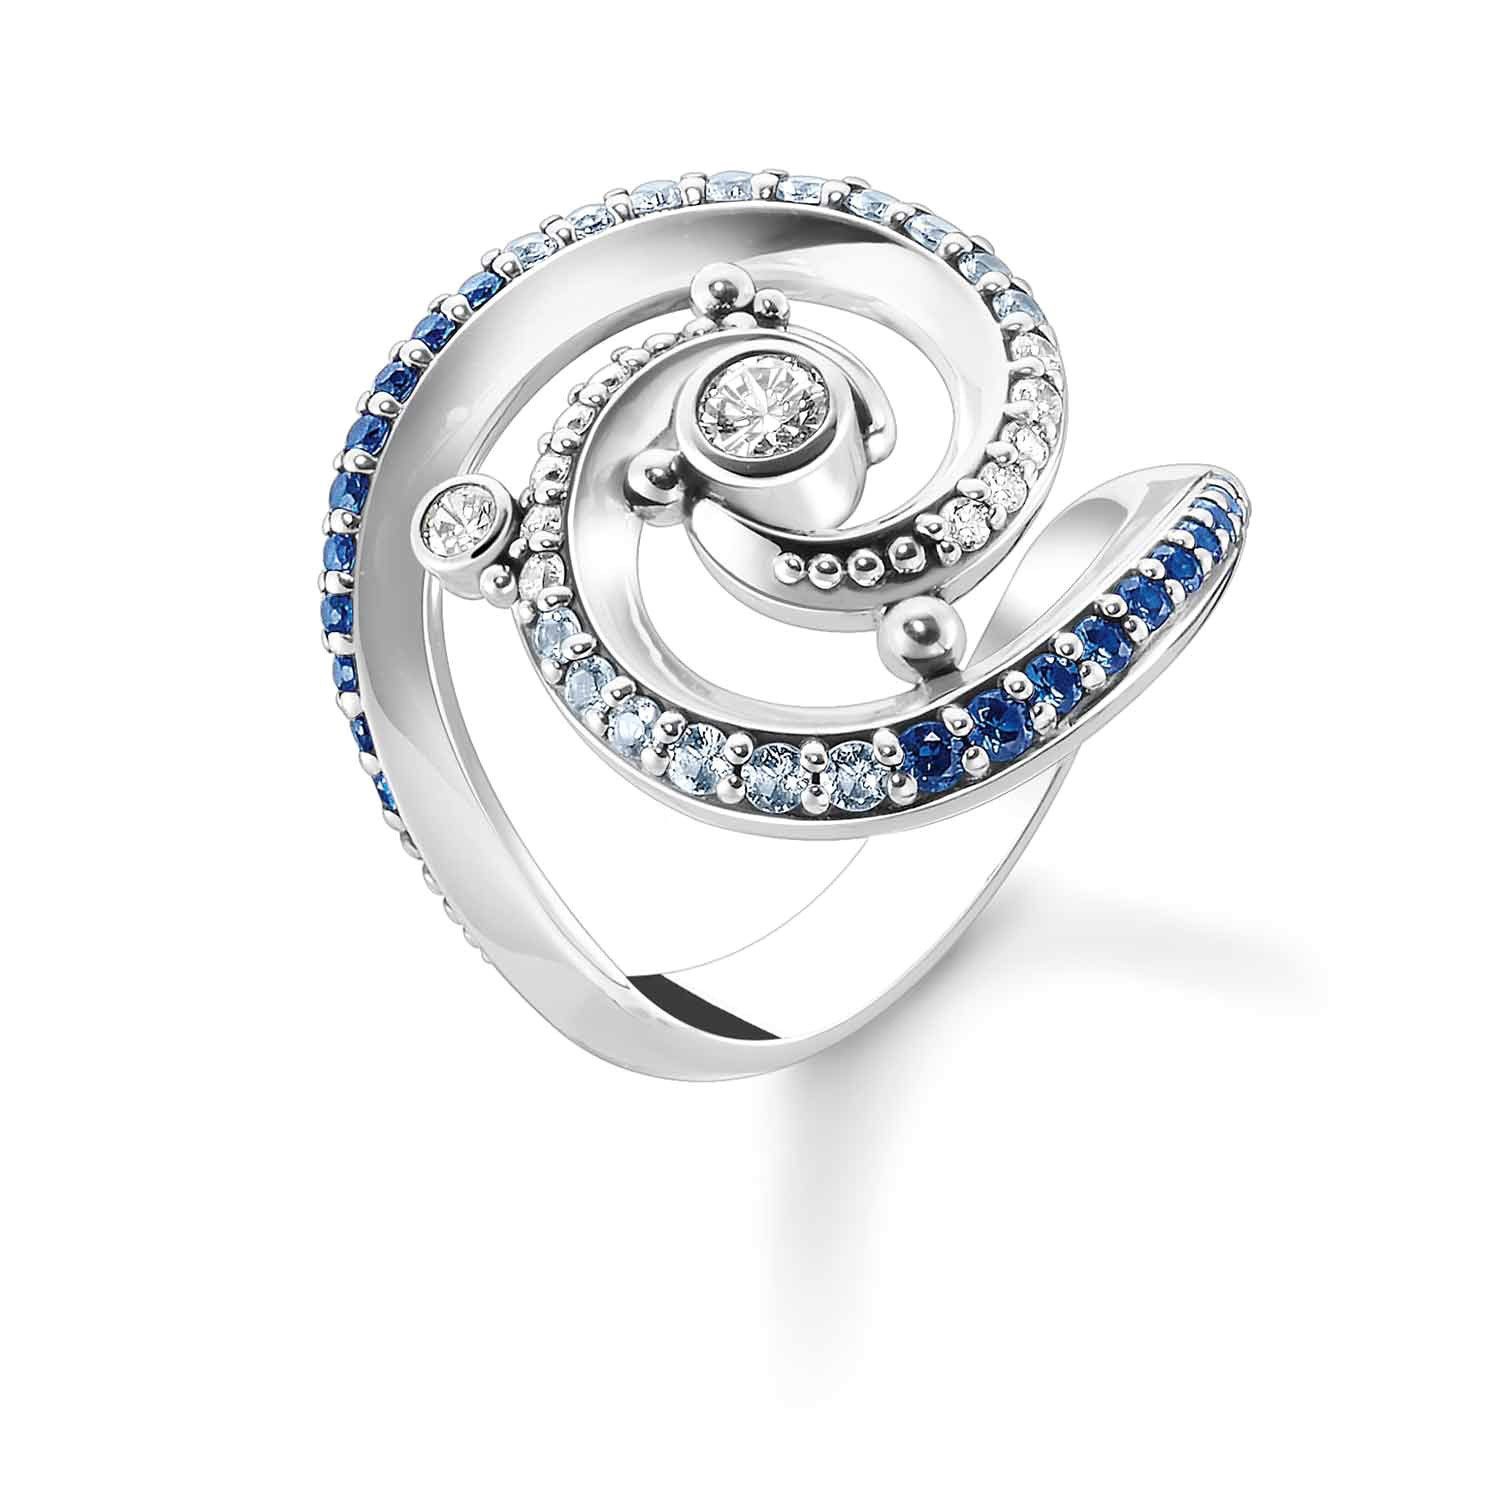 THOMAS SABO Silberring Silberring für Damen Welle mit Blauen Steinen | Silberringe